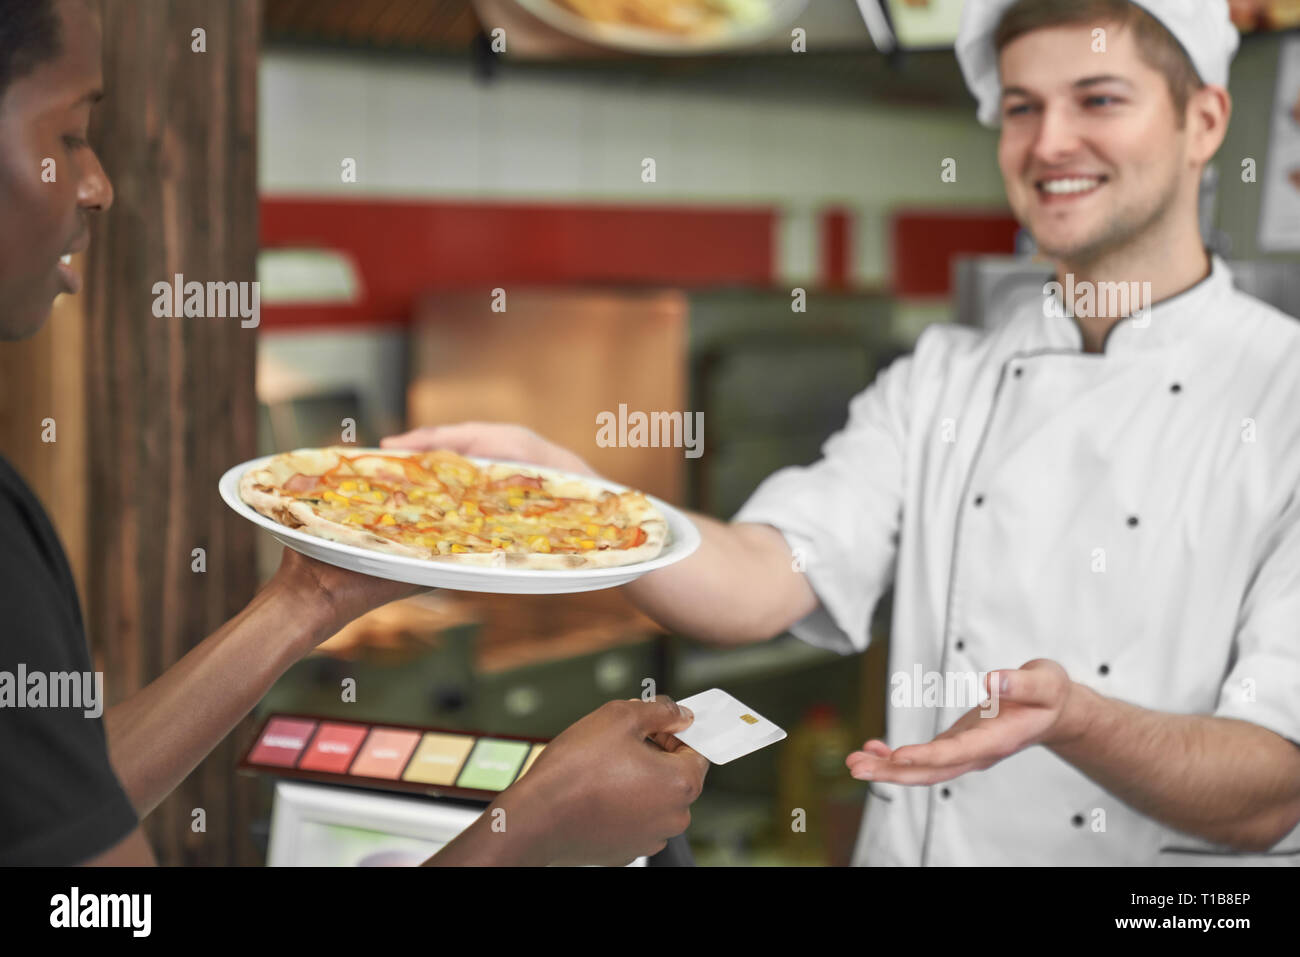 Junge afrikanische Holding leckere Pizza auf weiße Platte und das Bezahlen mit Karte. Schön, glücklich, Küchenchef in weiße Uniform Lächeln, das Gericht. Konzept des Fast Food und Pizzeria. Stockfoto